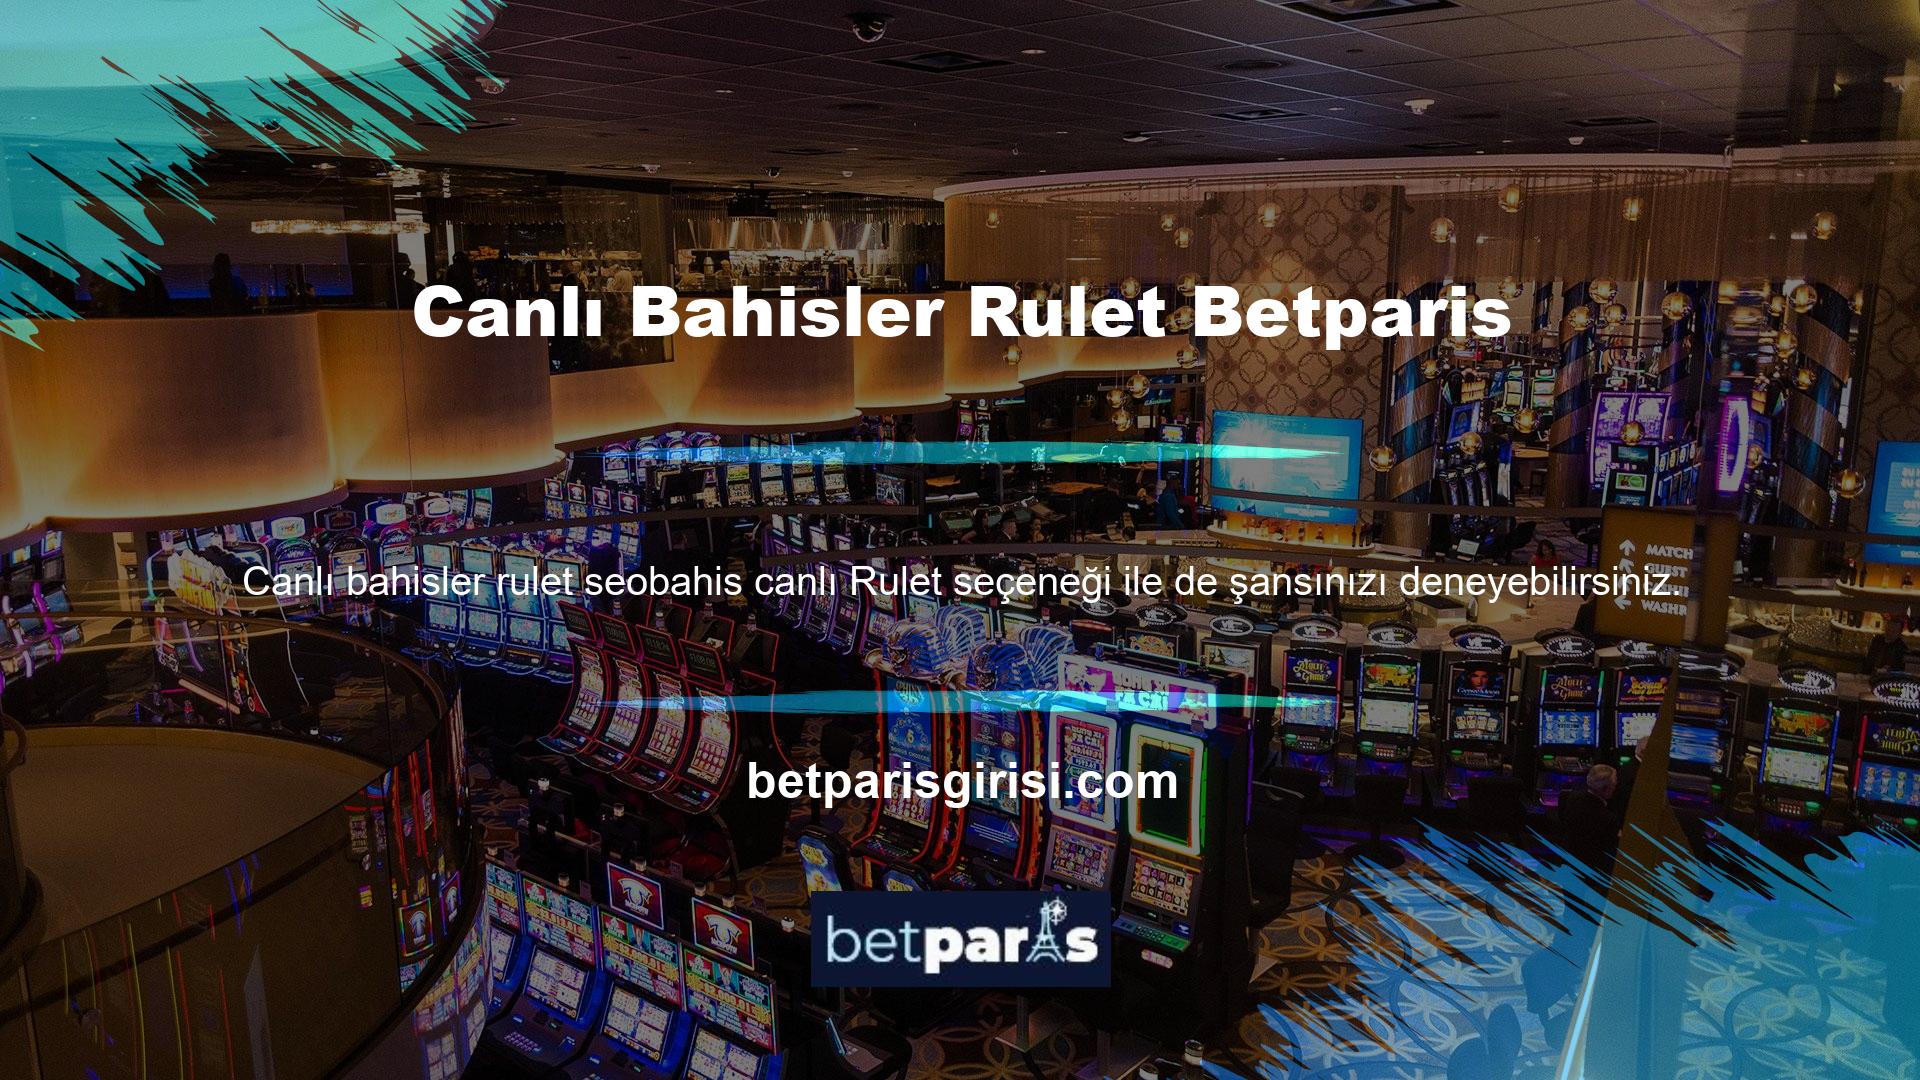 Güvenilir bir çevrimiçi casino platformu, kullanıcıları canlı bir atmosfere davet eder